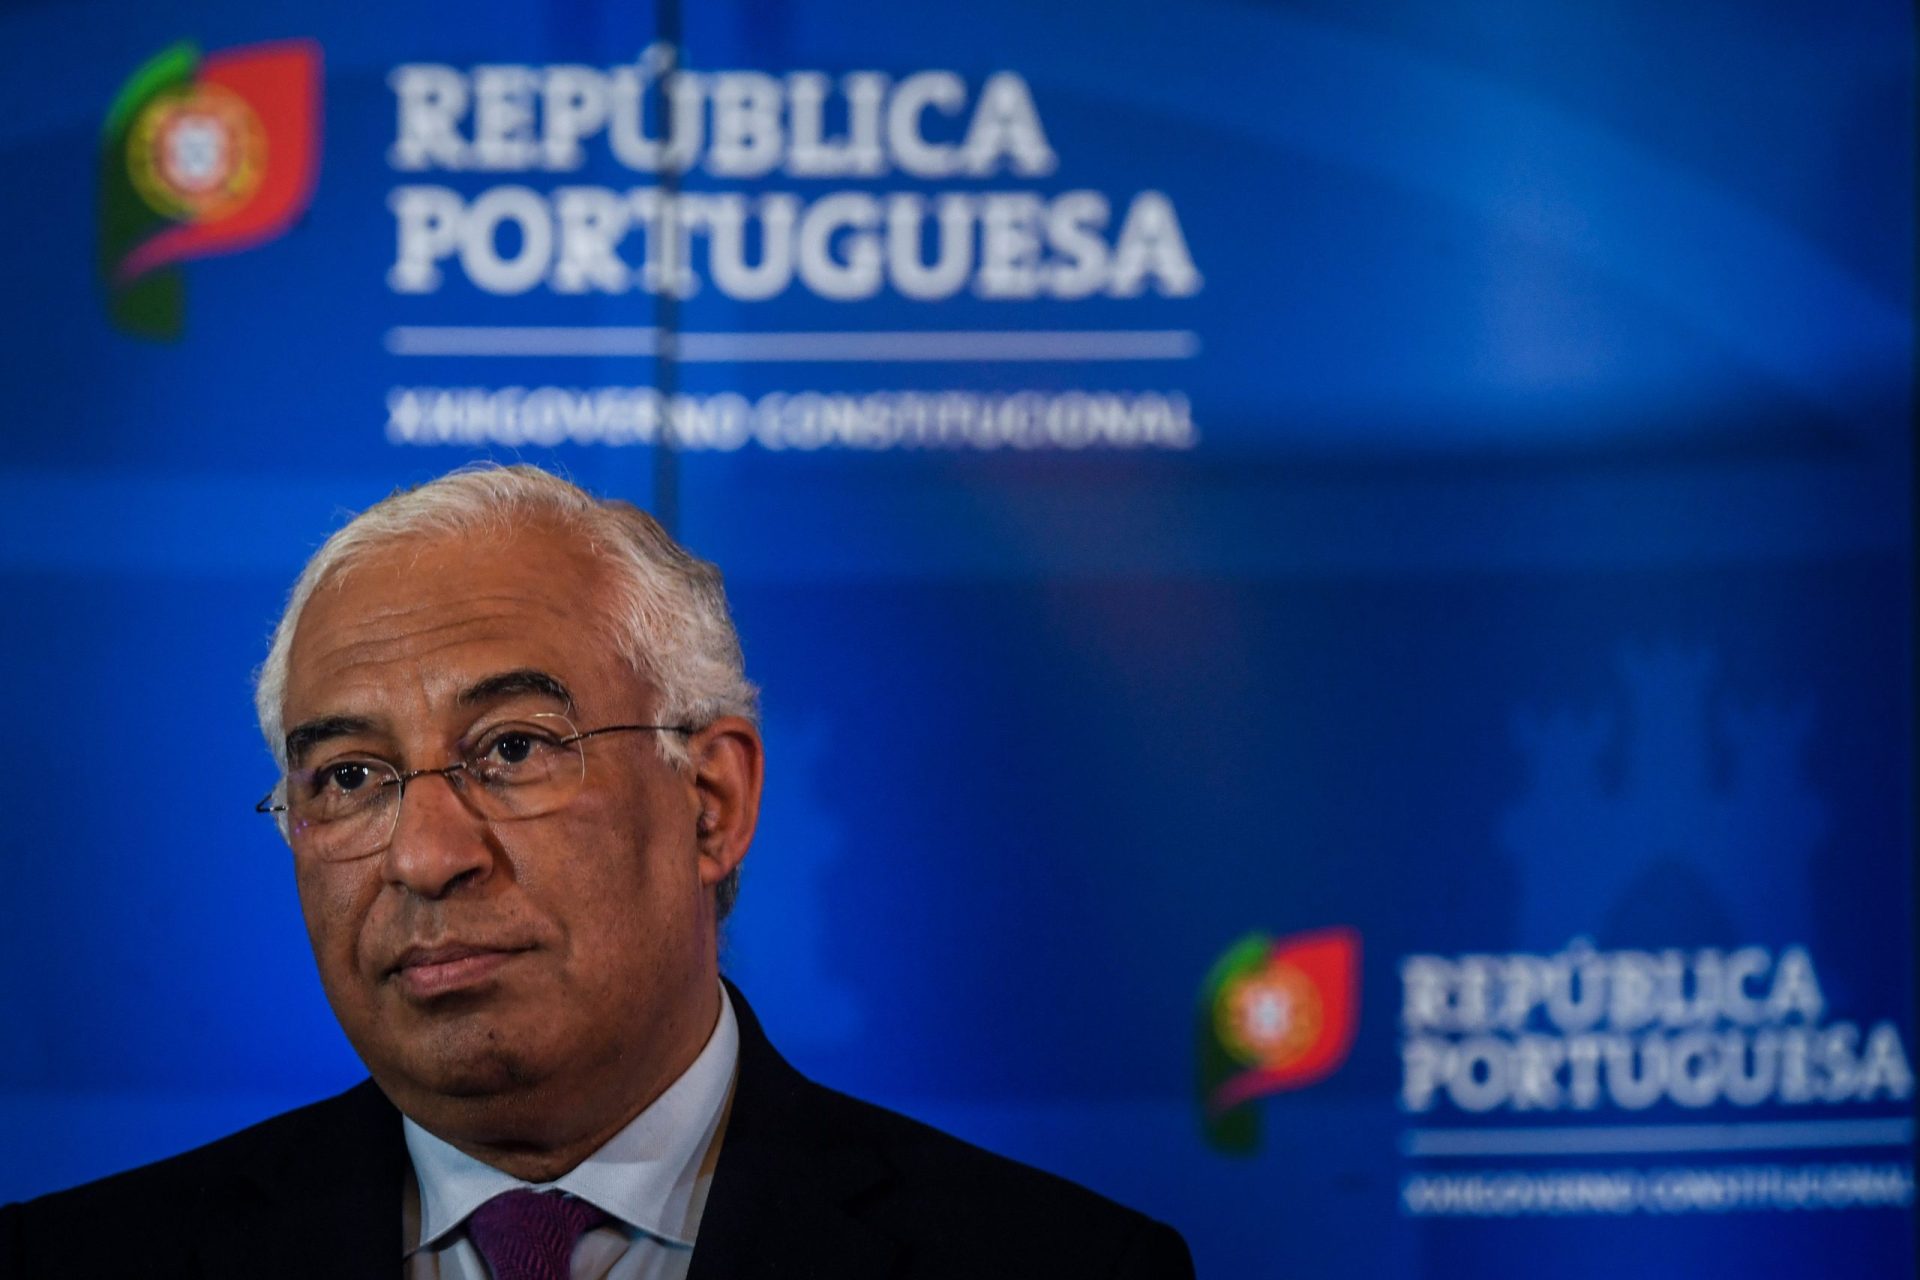 Portugal já deu primeiro passo para nova etapa da recuperação